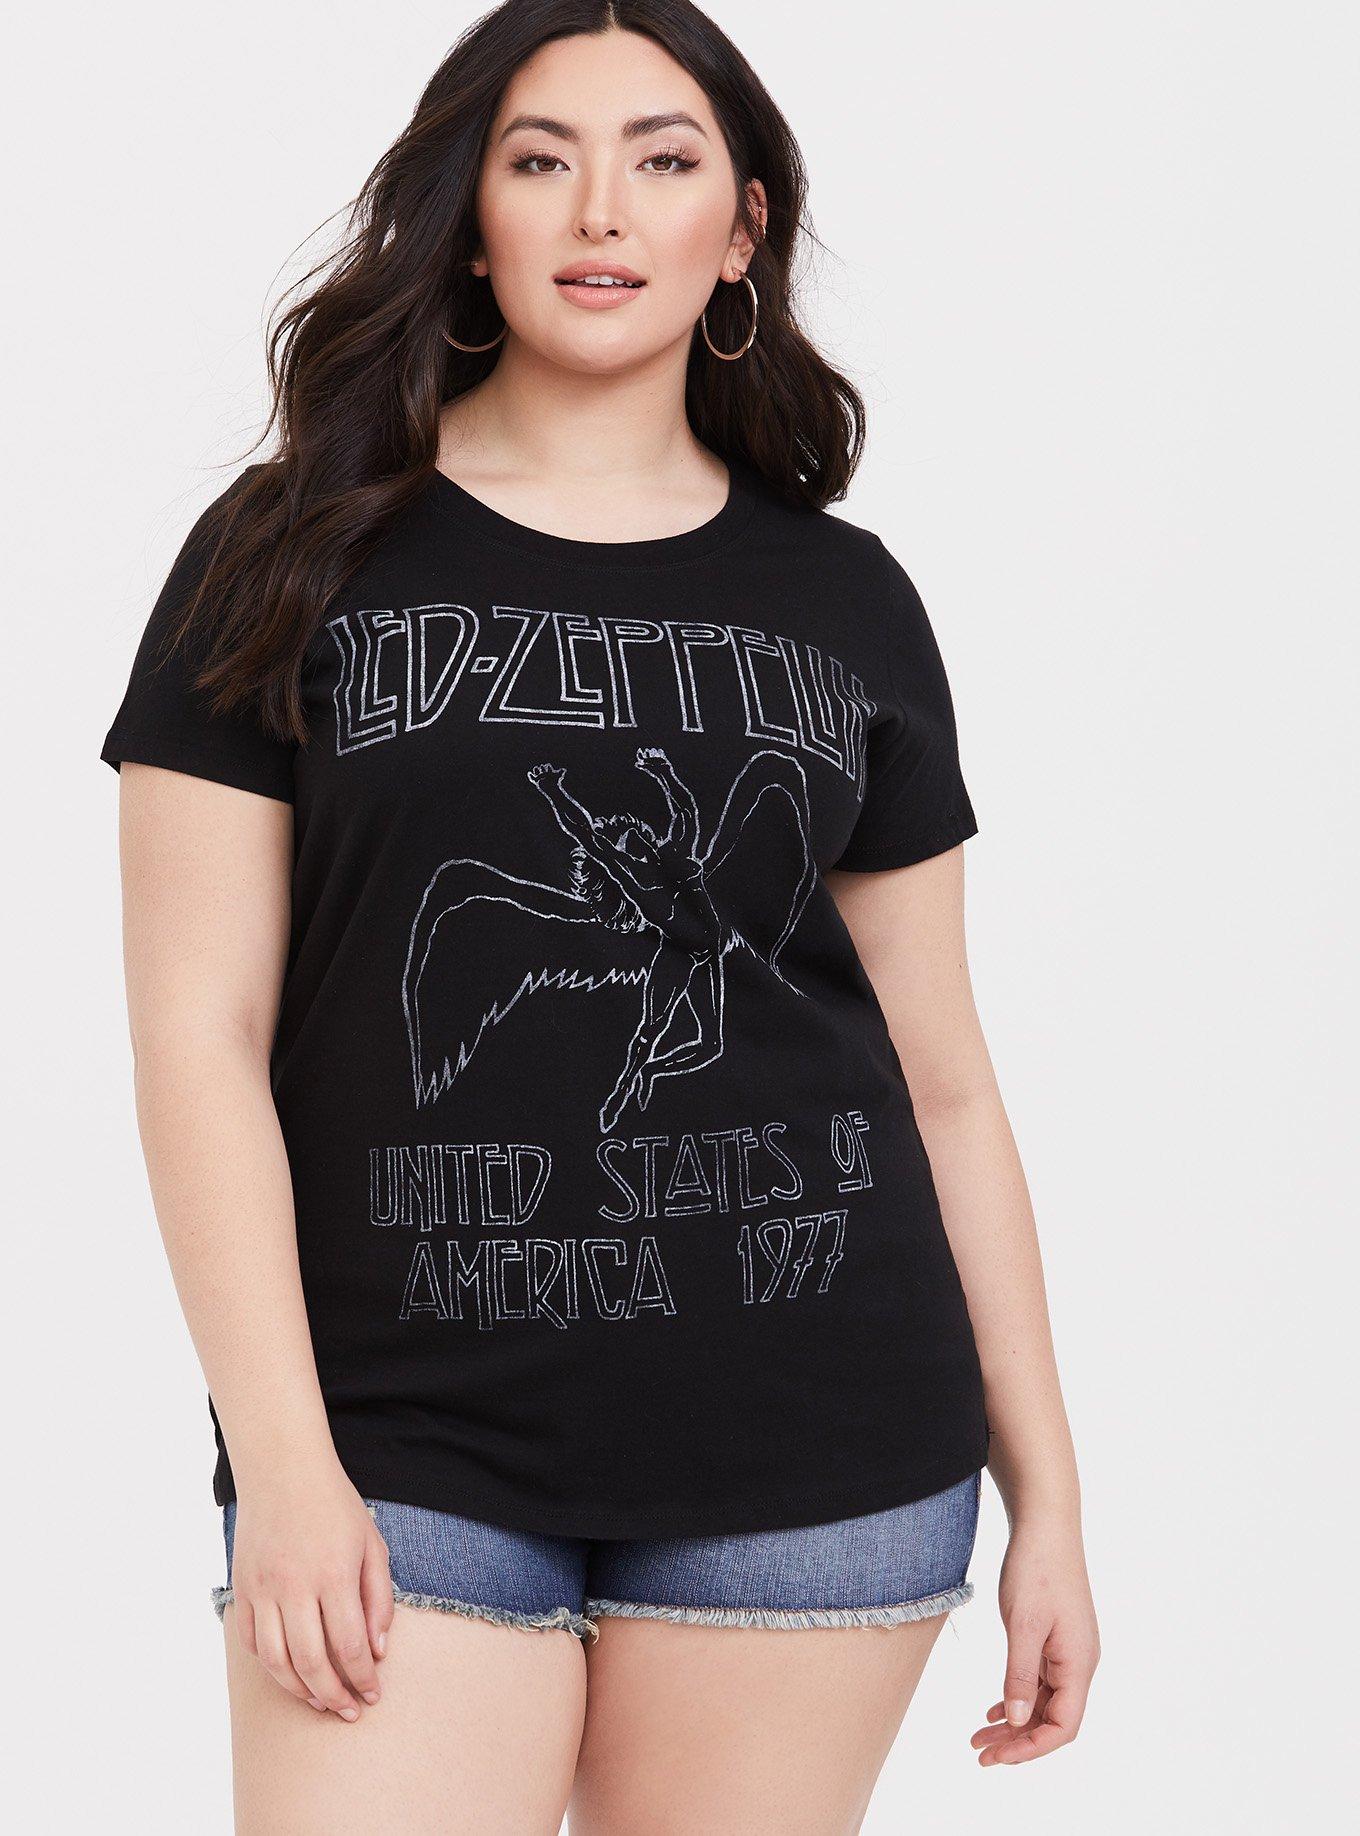 Plus Size - Led Zeppelin Black Slim Fit Tee - Torrid